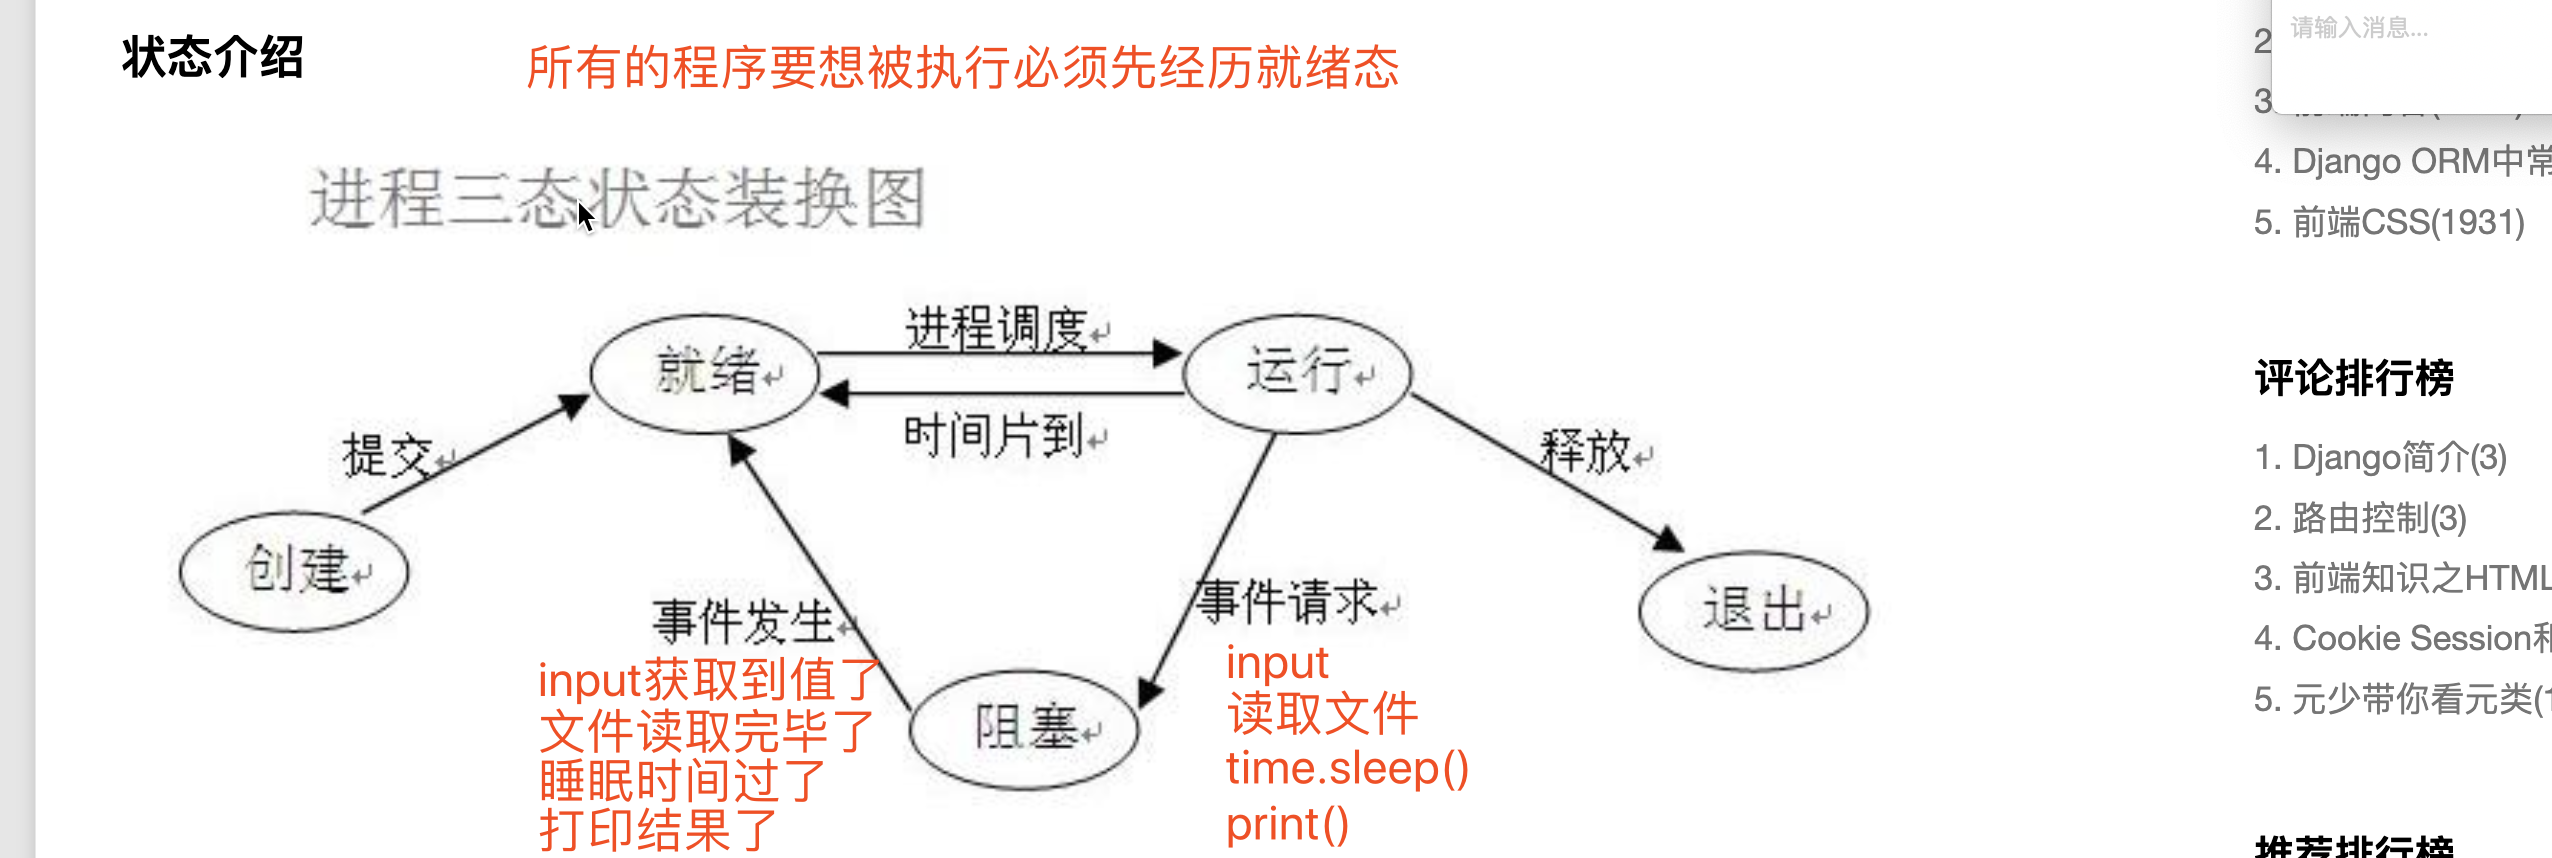 プロセス実行の3つの状態図